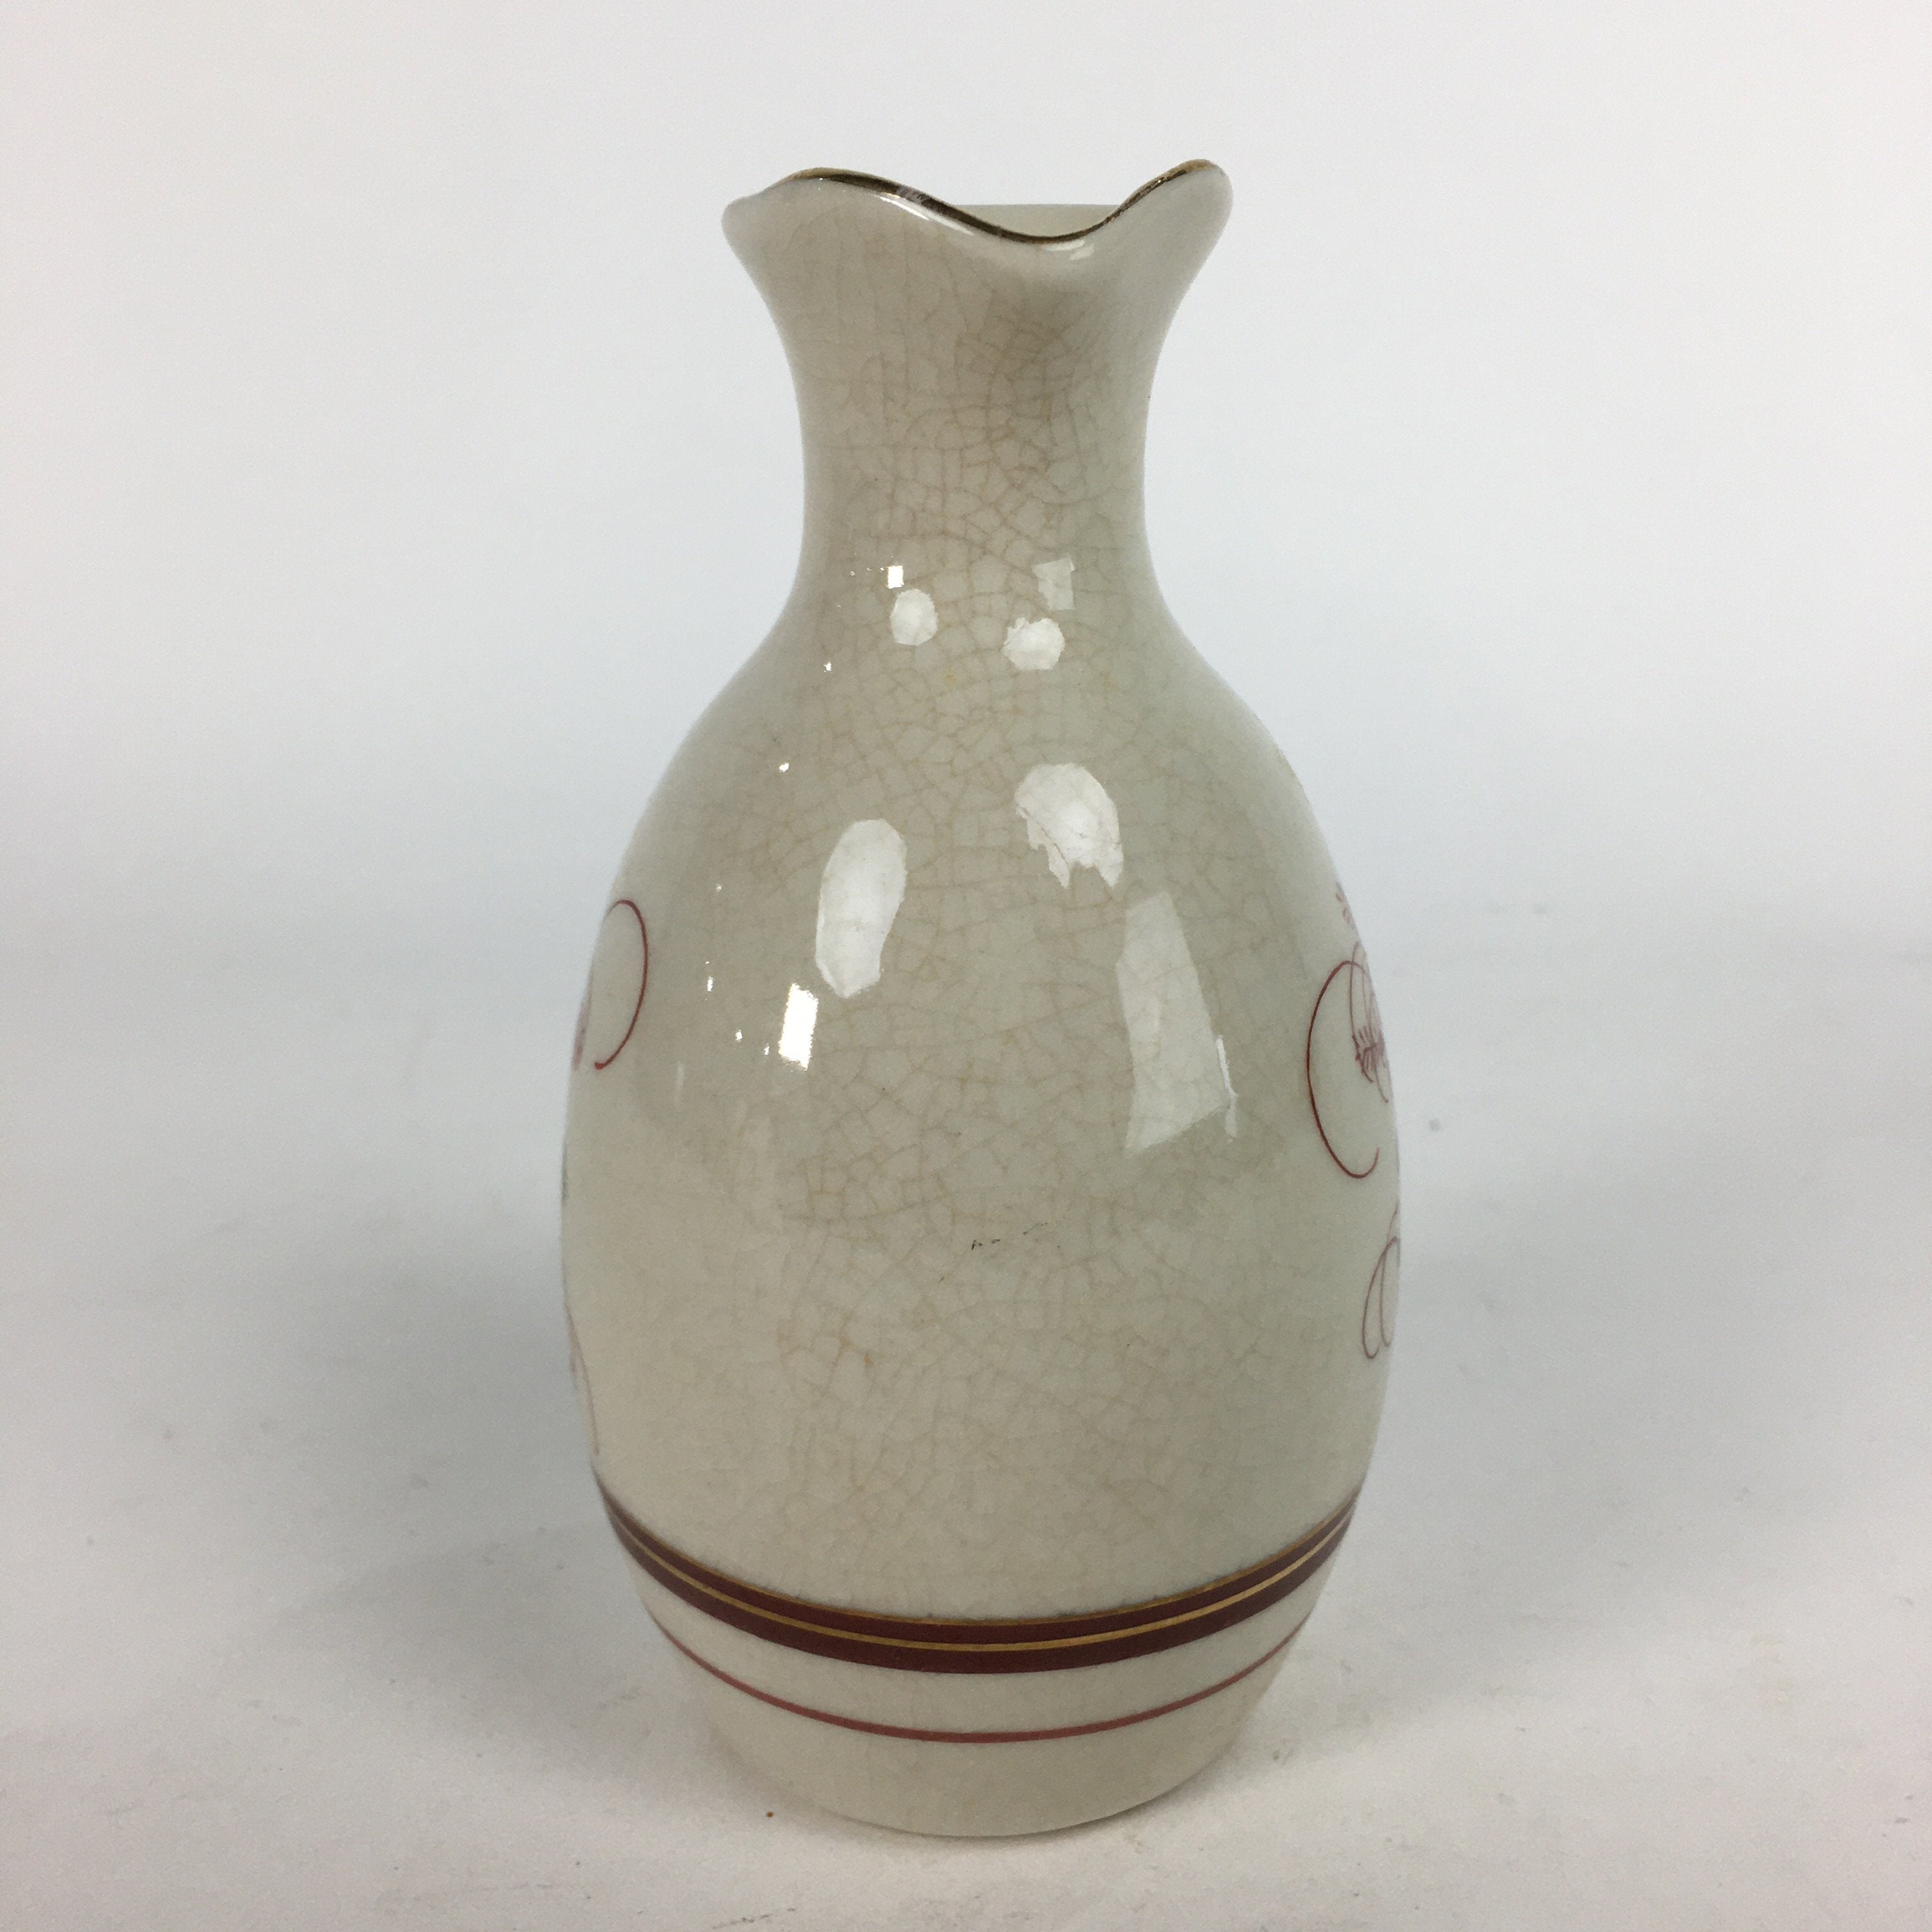 Japanese Ceramic Kutani ware Sake Bottle Tokkuri Vtg Pottery Flower Bird Design